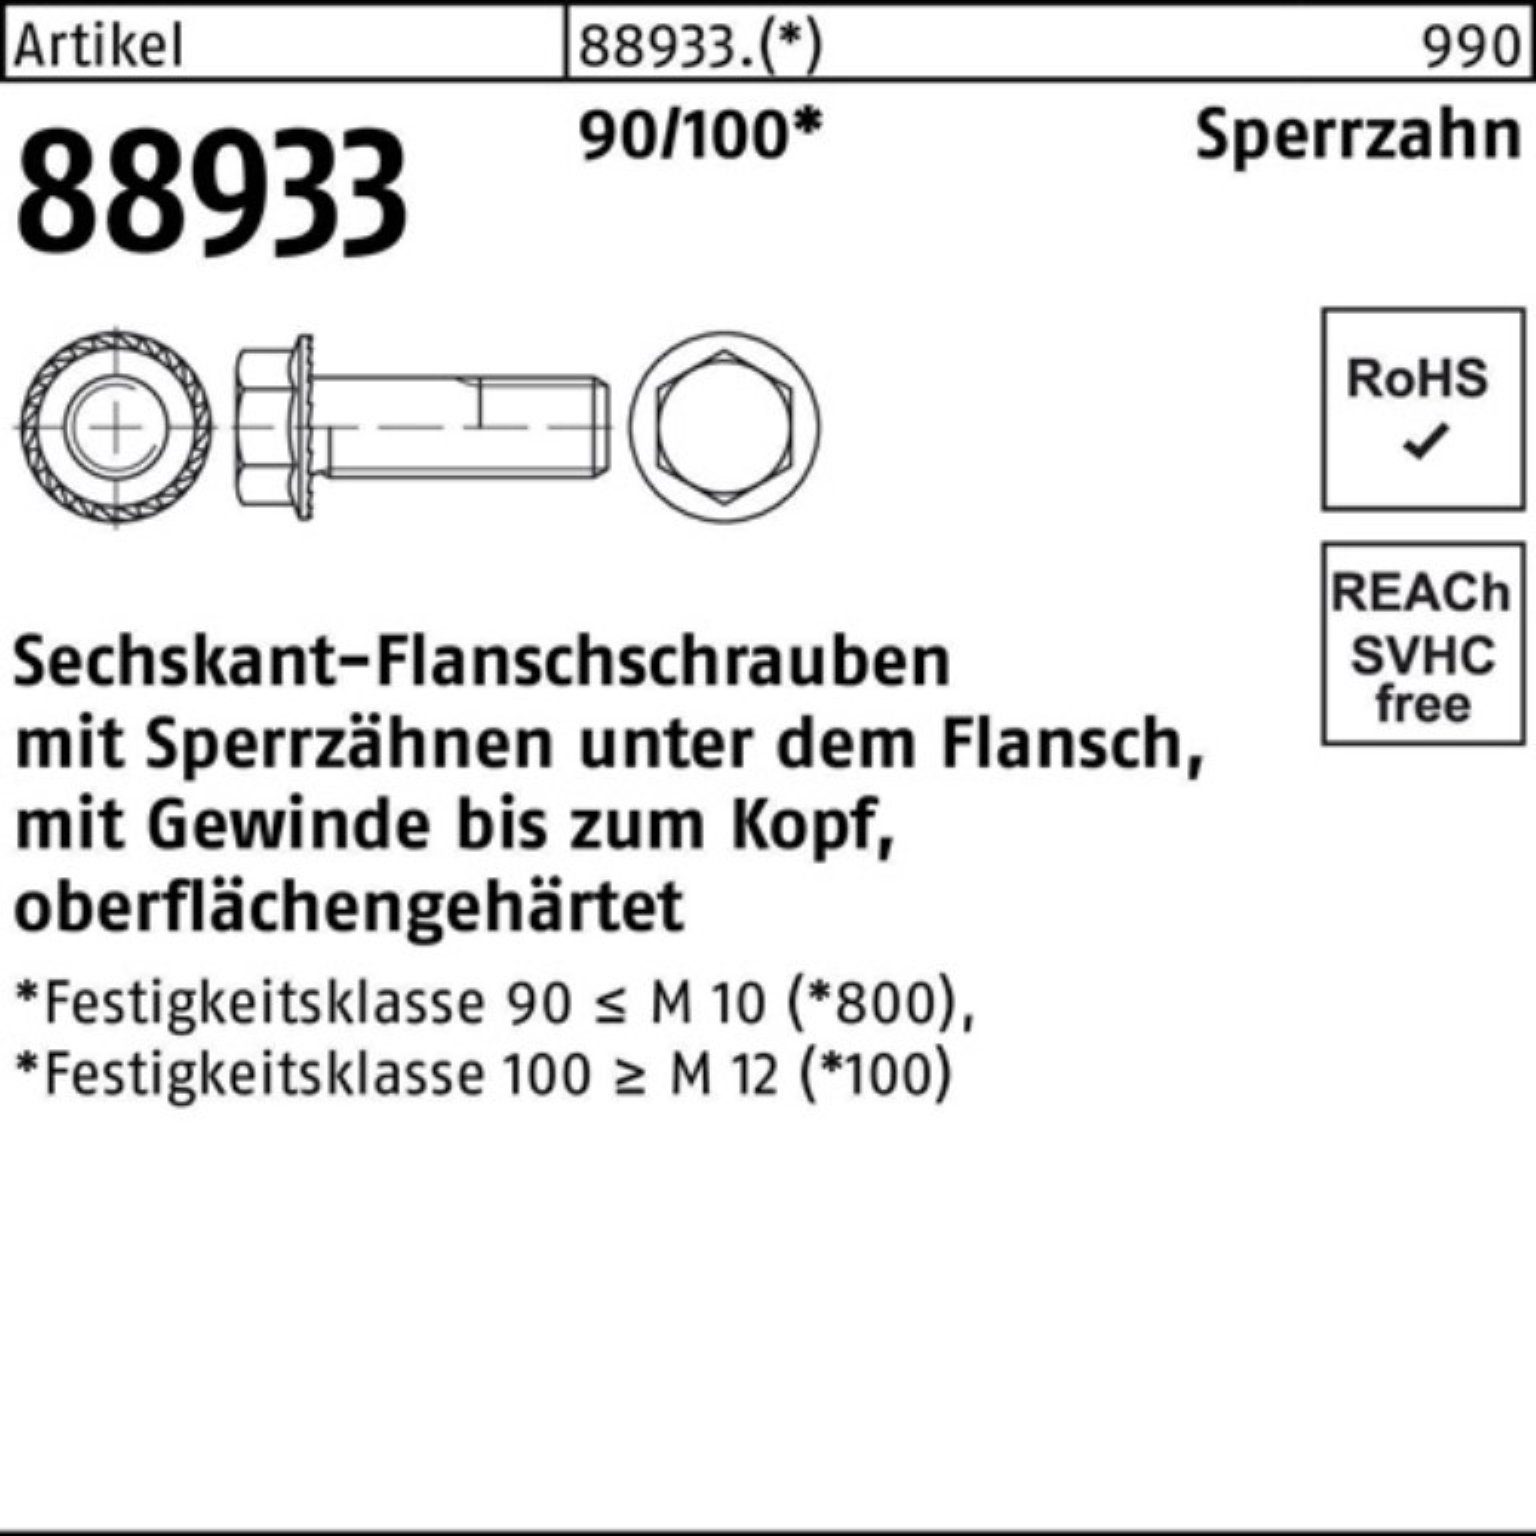 500er Reyher VG 14 Schraube 88933 Sperrz. R Sechskantflanschschraube 5 90/100 Pack M5x